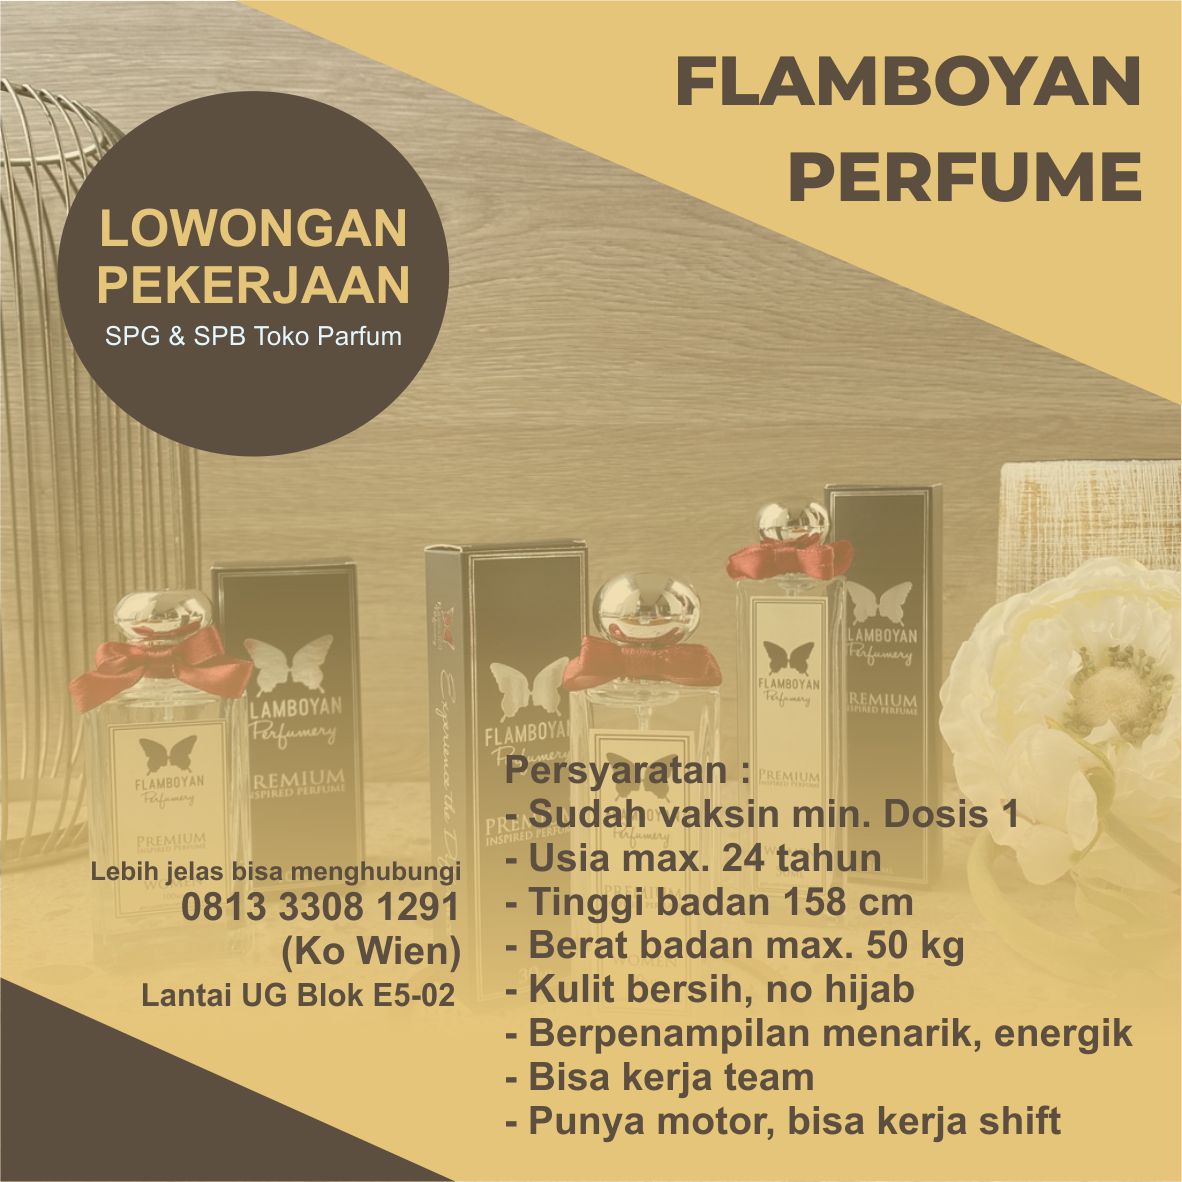 Lowongan SPG & SPB Flamboyan Perfume